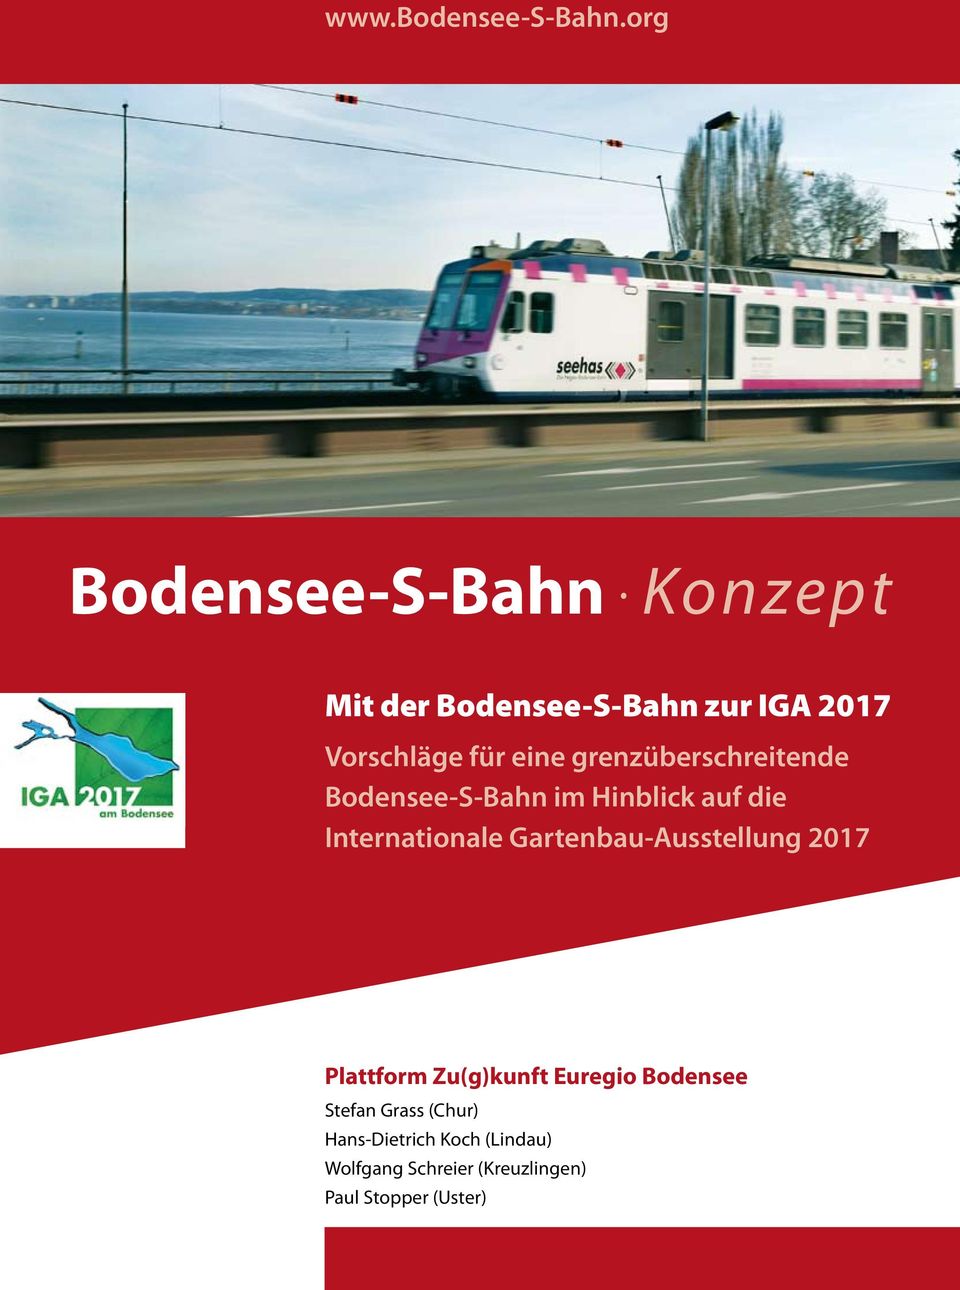 grenzüberschreitende Bodensee-S-Bahn im Hinblick auf die Internationale